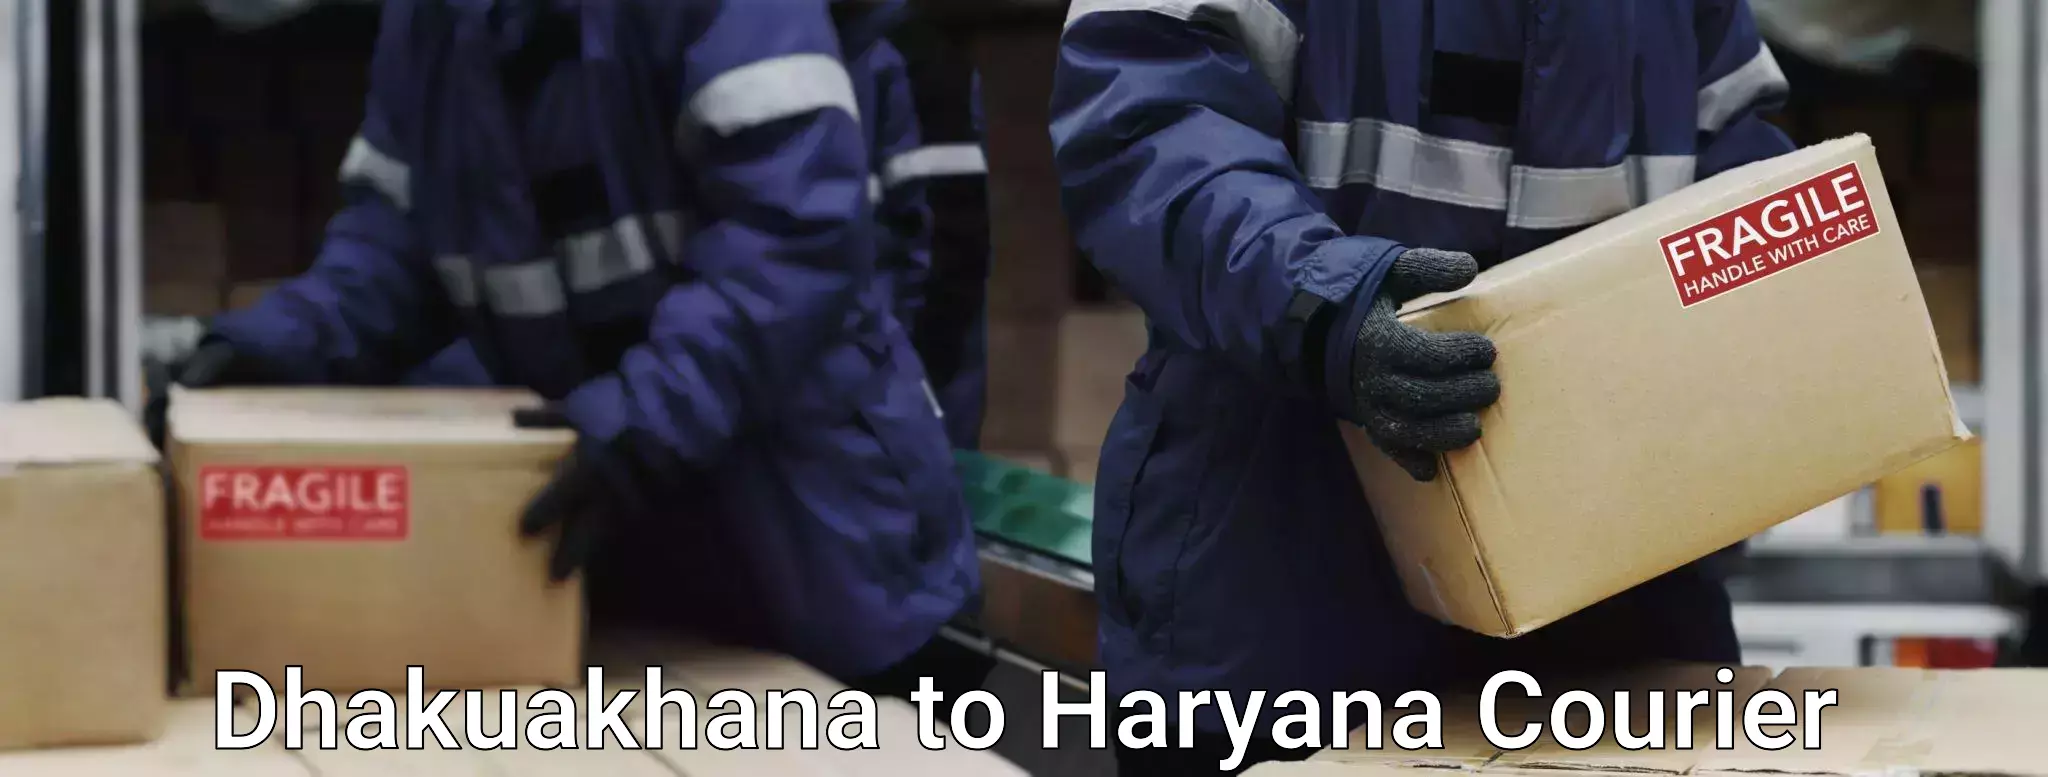 Baggage shipping experience Dhakuakhana to Chaudhary Charan Singh Haryana Agricultural University Hisar